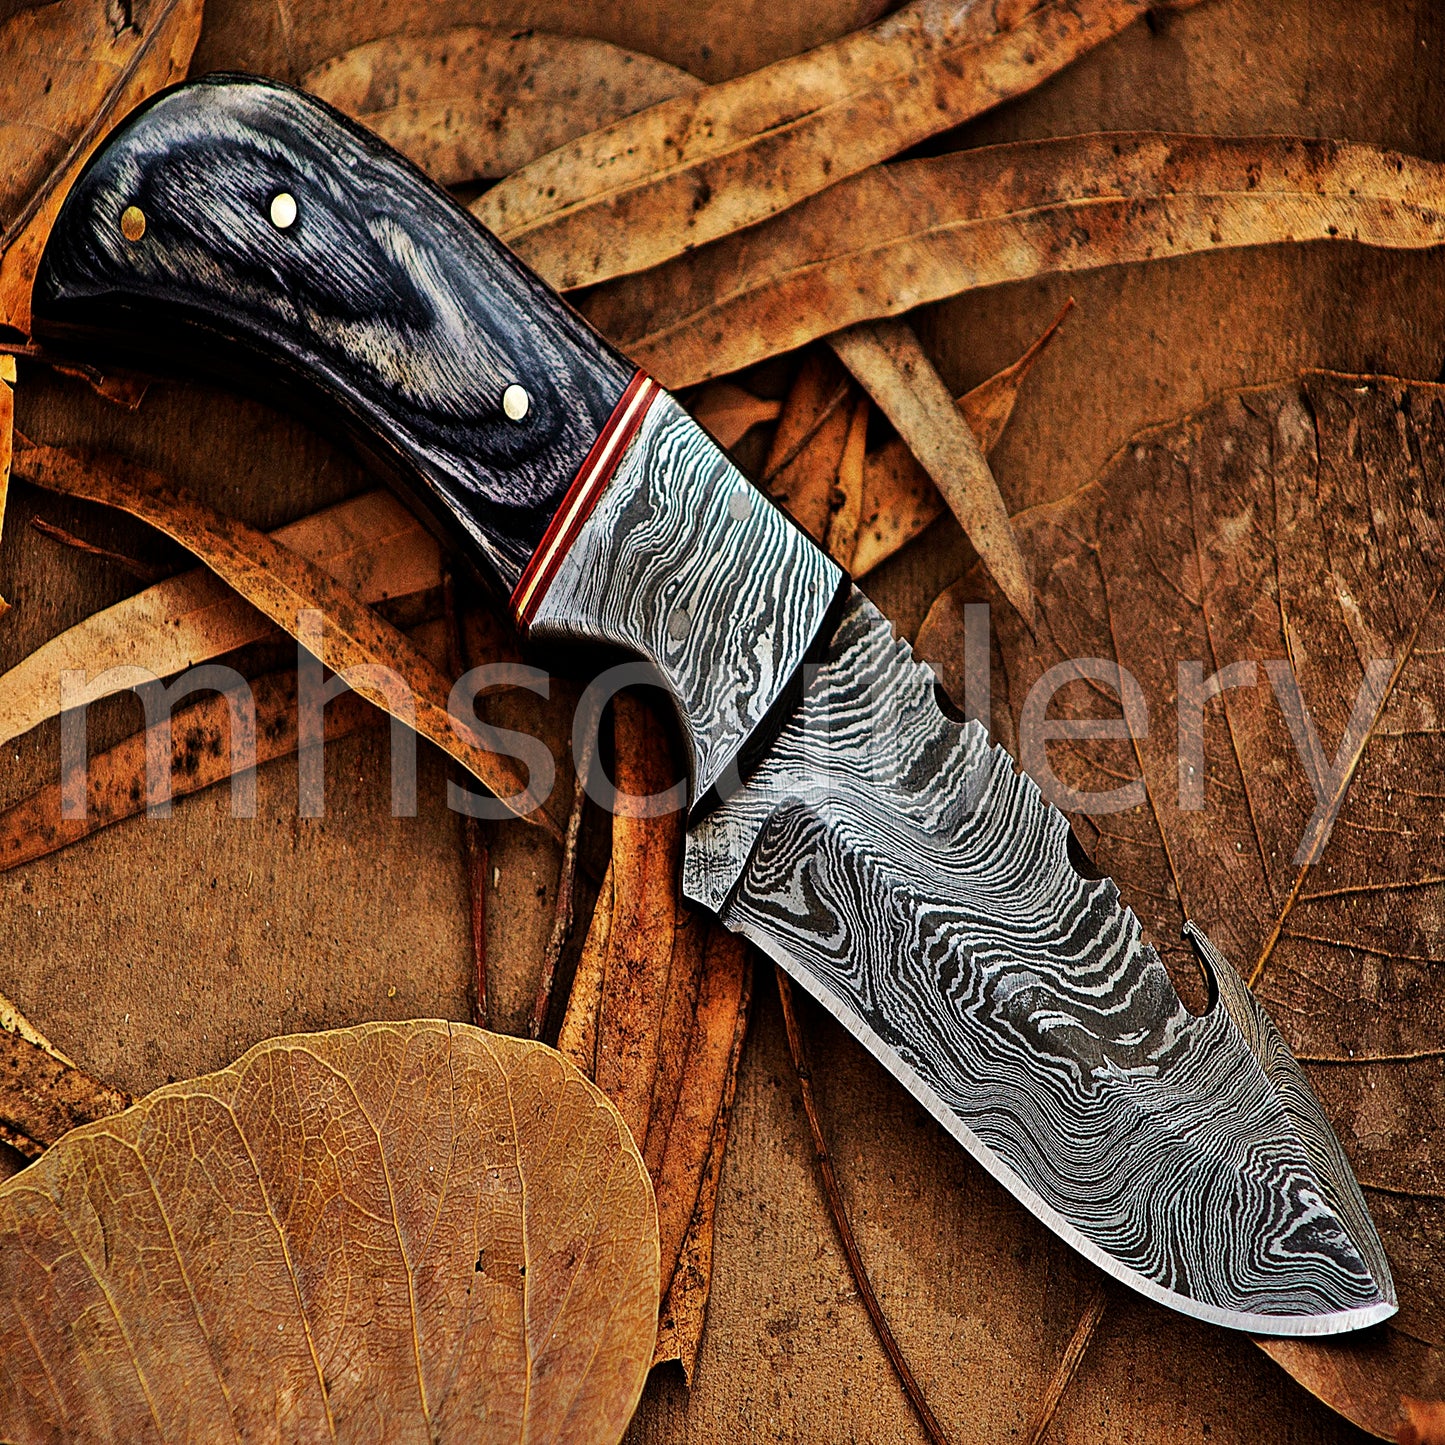 Damascus Steel Gut-Hook Skinner Knife | mhscutlery